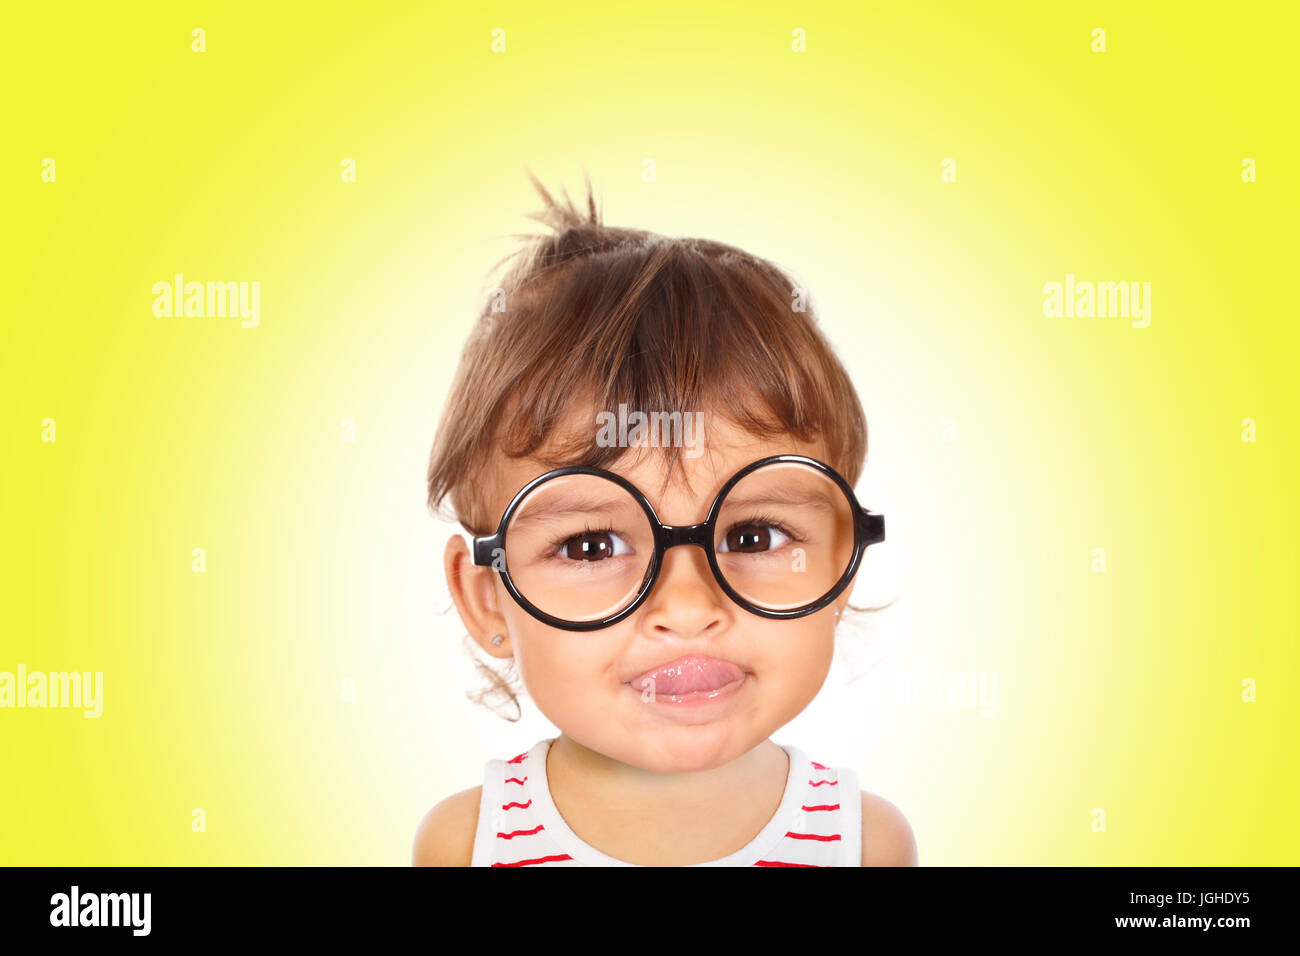 Porträt von lächelnden kleinen Mädchen mit schwarzen Brille Blick in die Kamera. Gelber Hintergrund Stockfoto